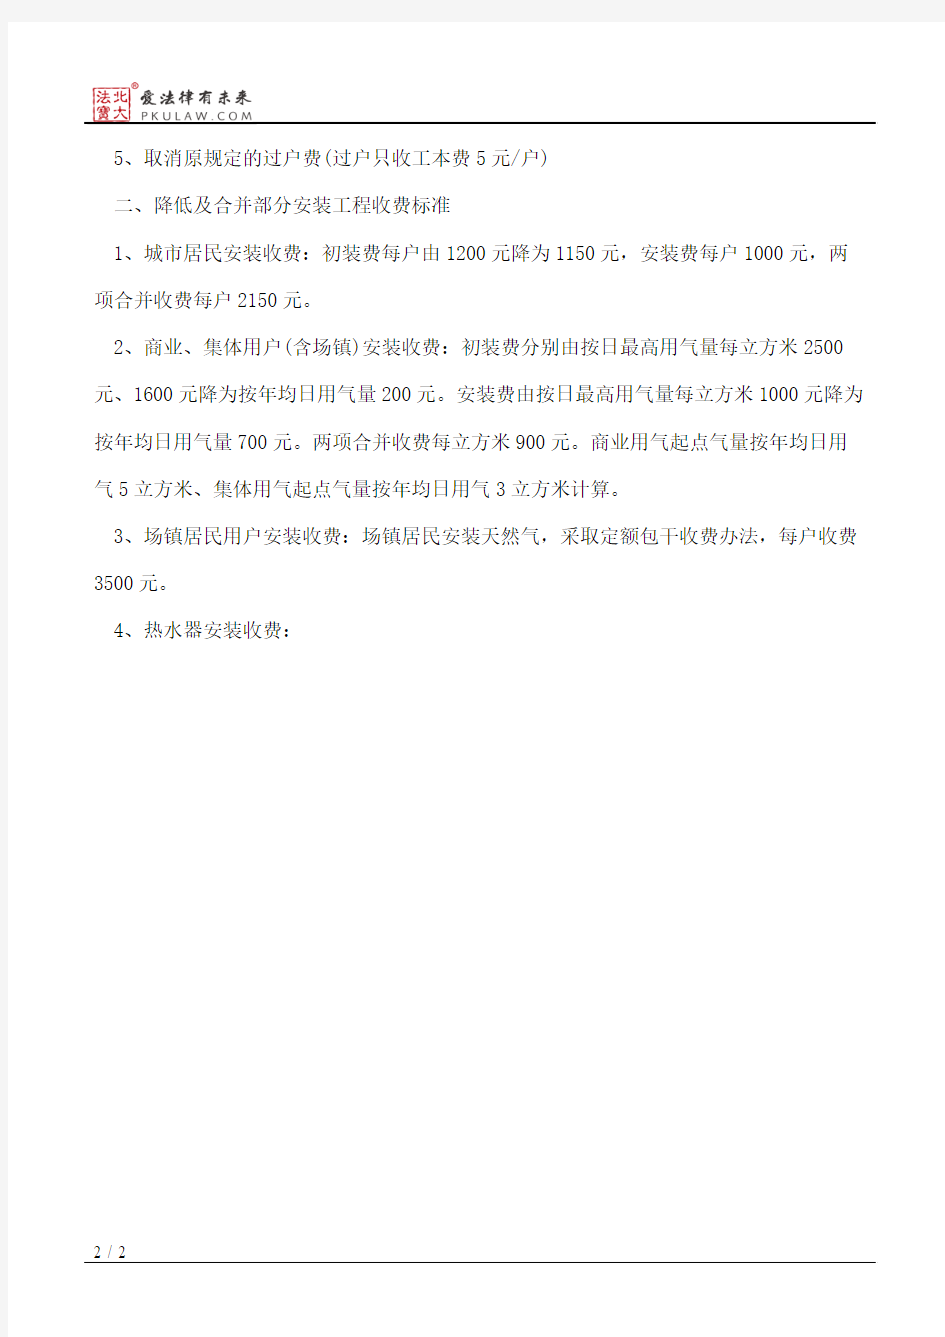 重庆市物价局关于调整天然气安装及服务收费标准的通知